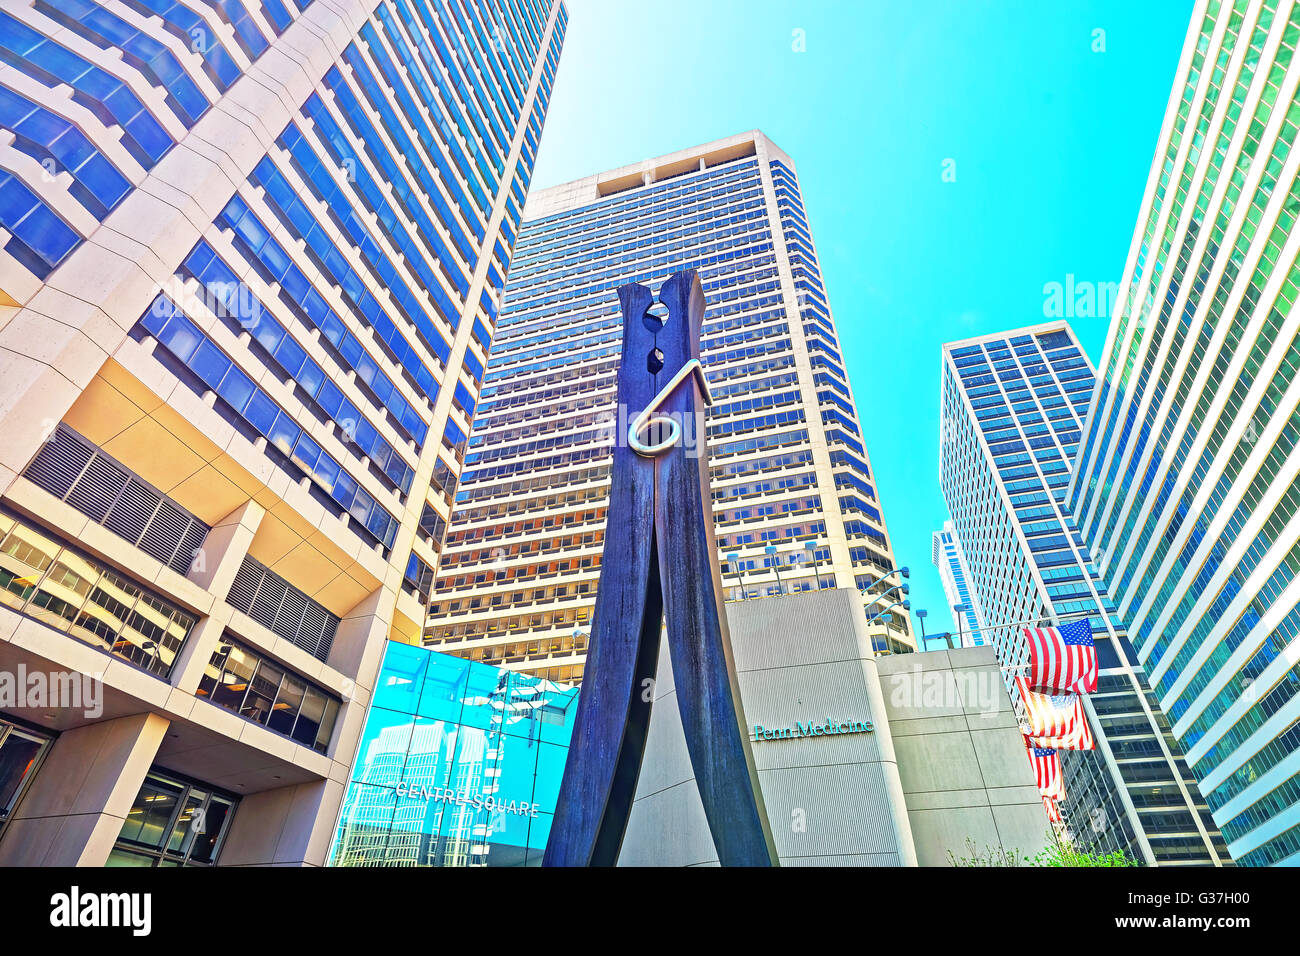 Philadelphie, USA - 4 mai 2015 : Clothespin sculpture à gratte-ciel dans le centre-ville de Philadelphie. New York, USA. Banque D'Images